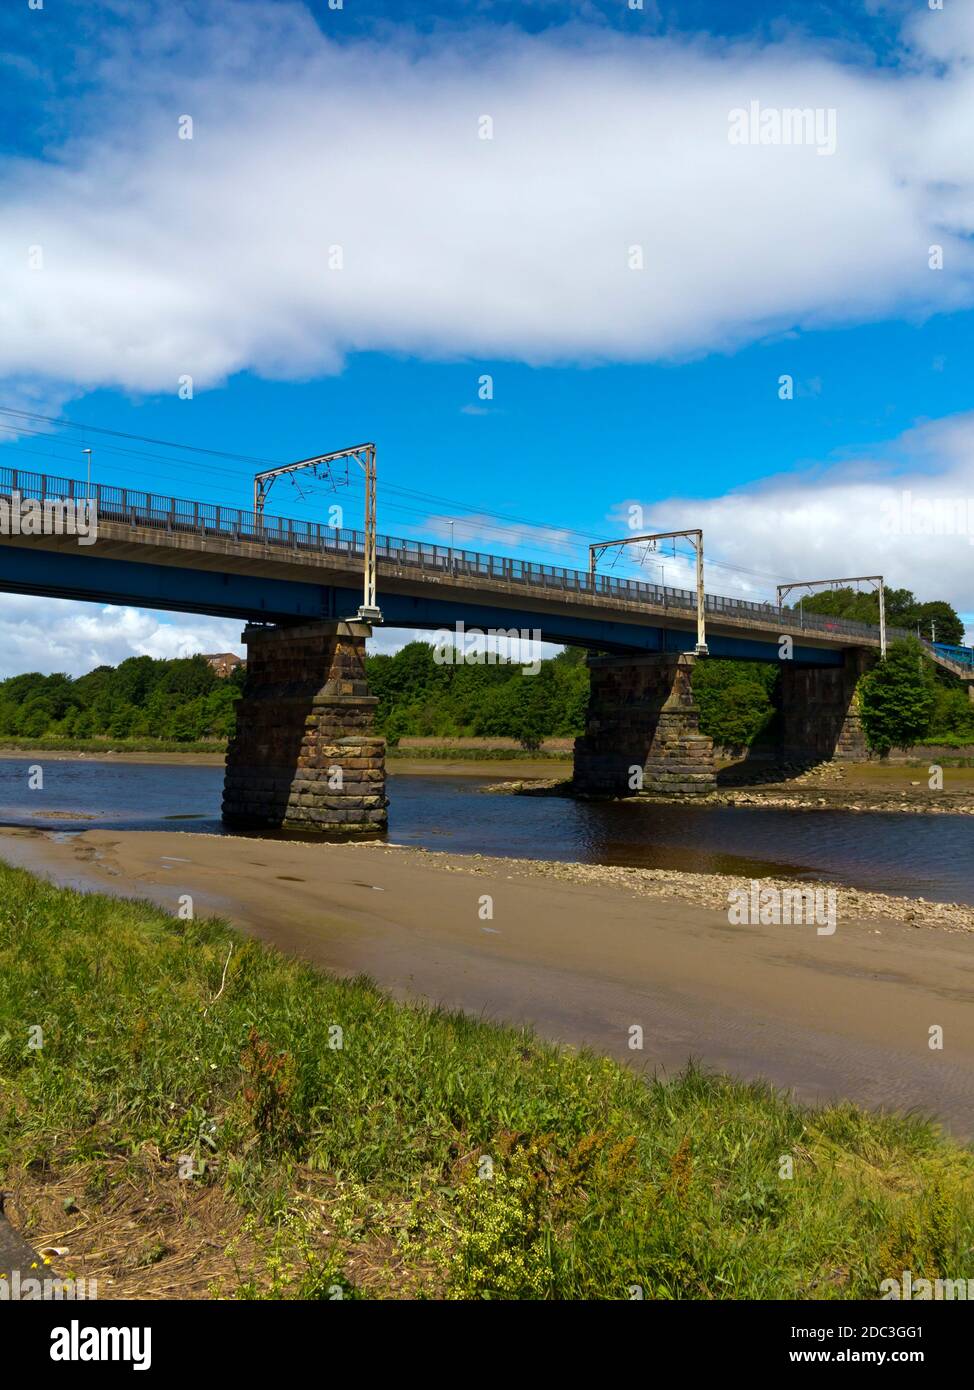 West Coast Mainline Railway Brücke über den Fluss Lune in Lancaster eine Stadt in Lancashire Nordwesten Englands. Stockfoto